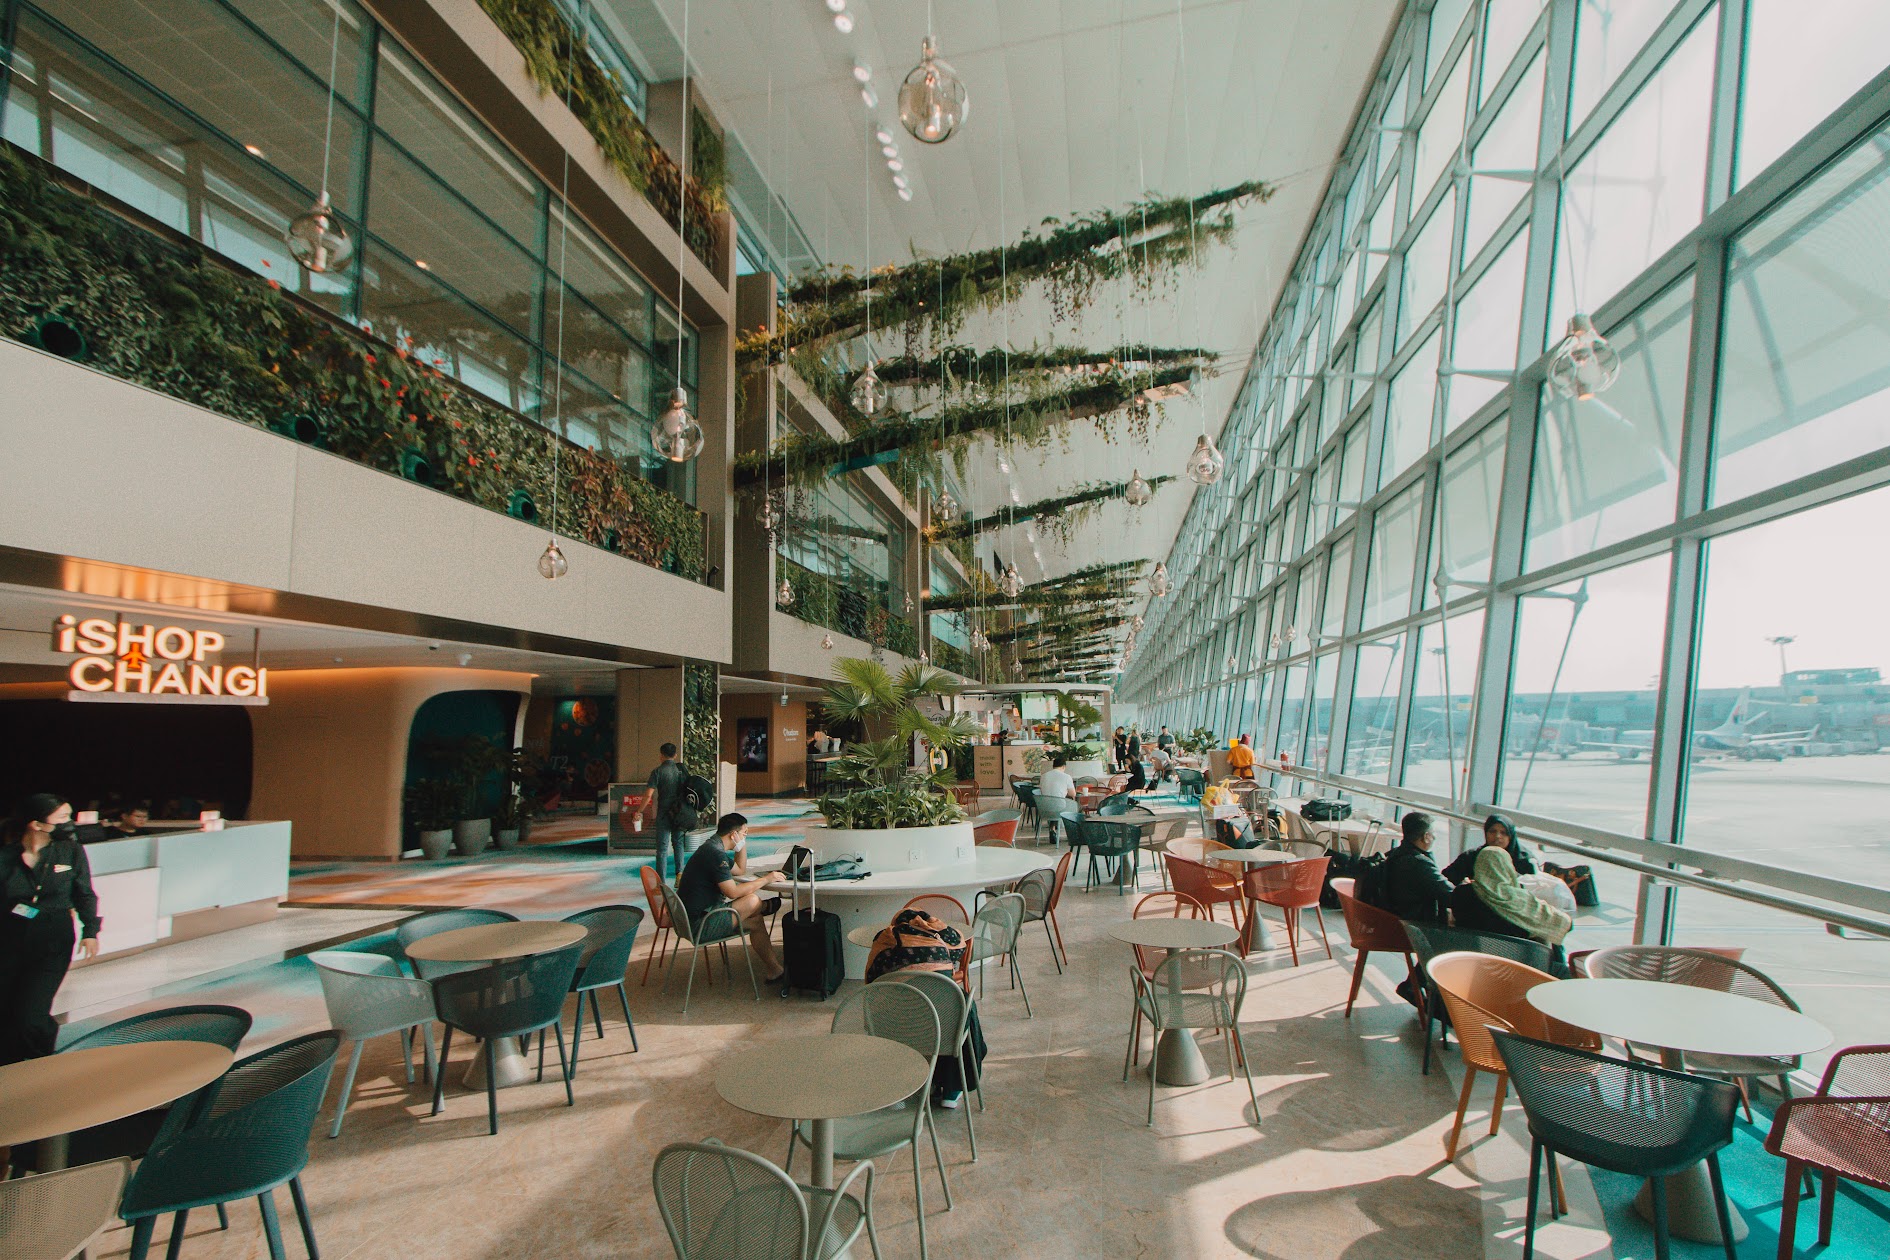 Sân bay Changi tái mở cửa nhà ga T2, nội khu hiện đại, đầy hơi thở thiên nhiên khiến tín đồ du lịch nhấp nhổm!  - Ảnh 4.